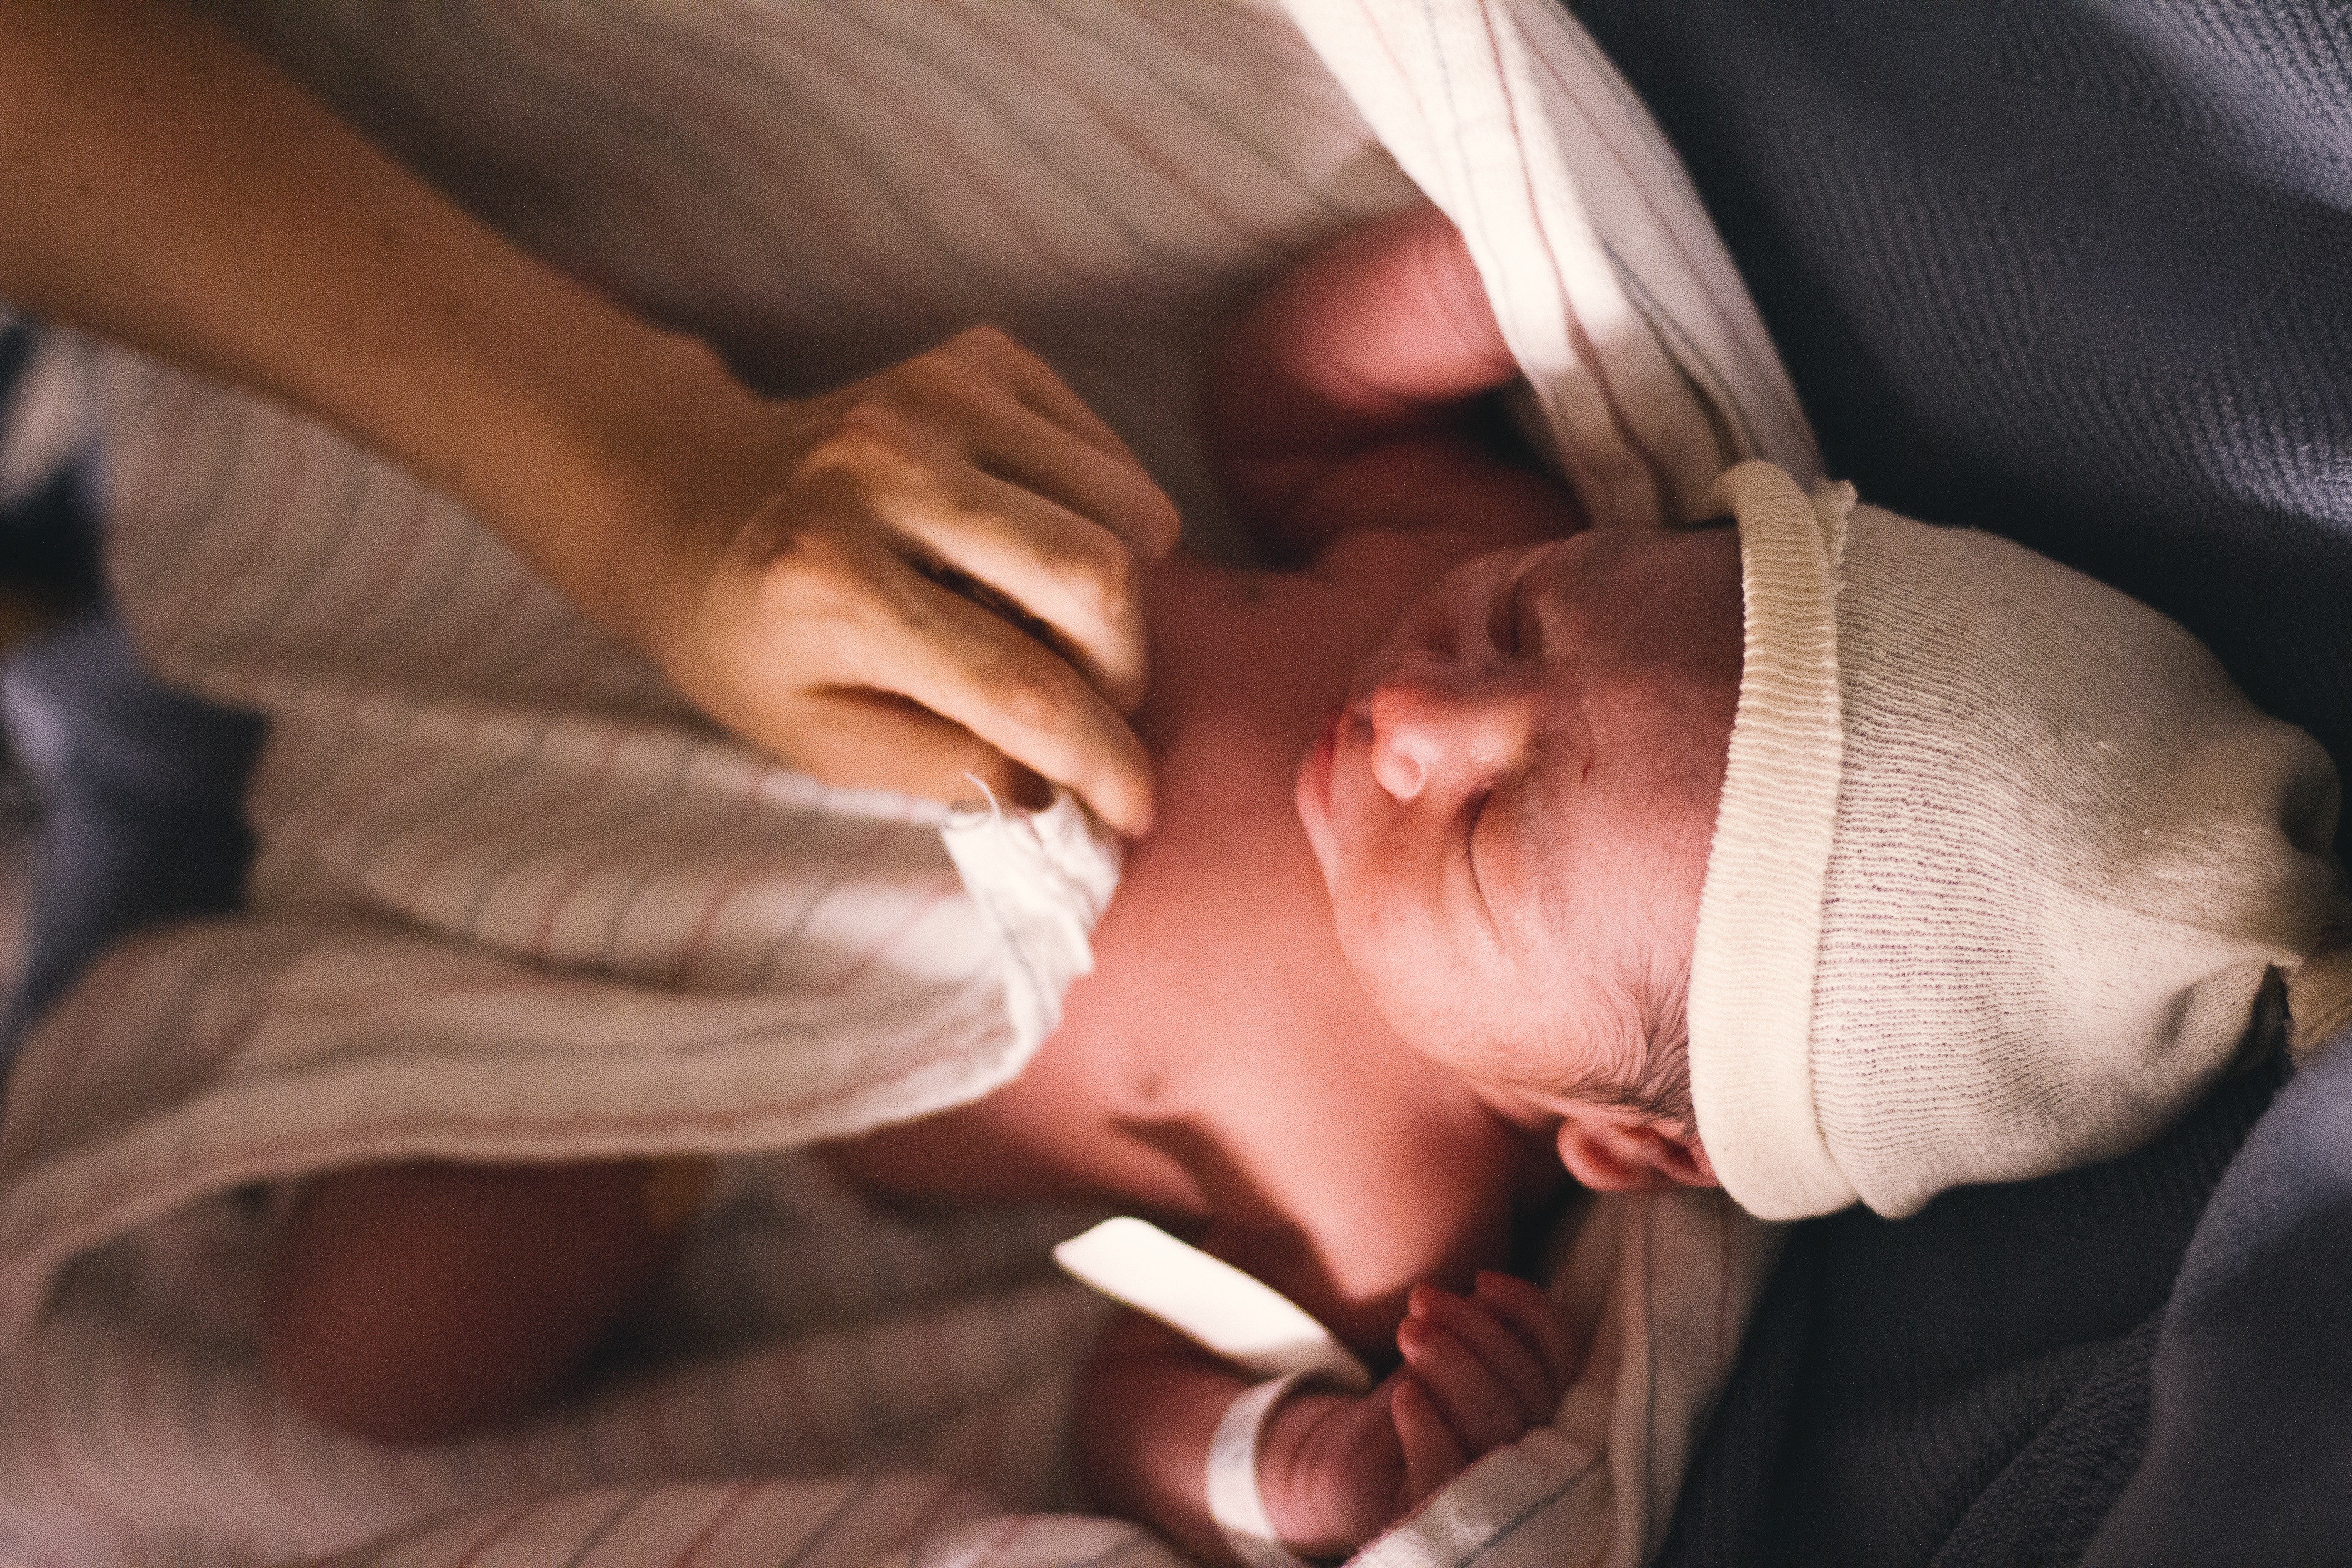 Pamela war untröstlich, als sie ein neugeborenes Baby in der Tasche fand. | Quelle: Pexels